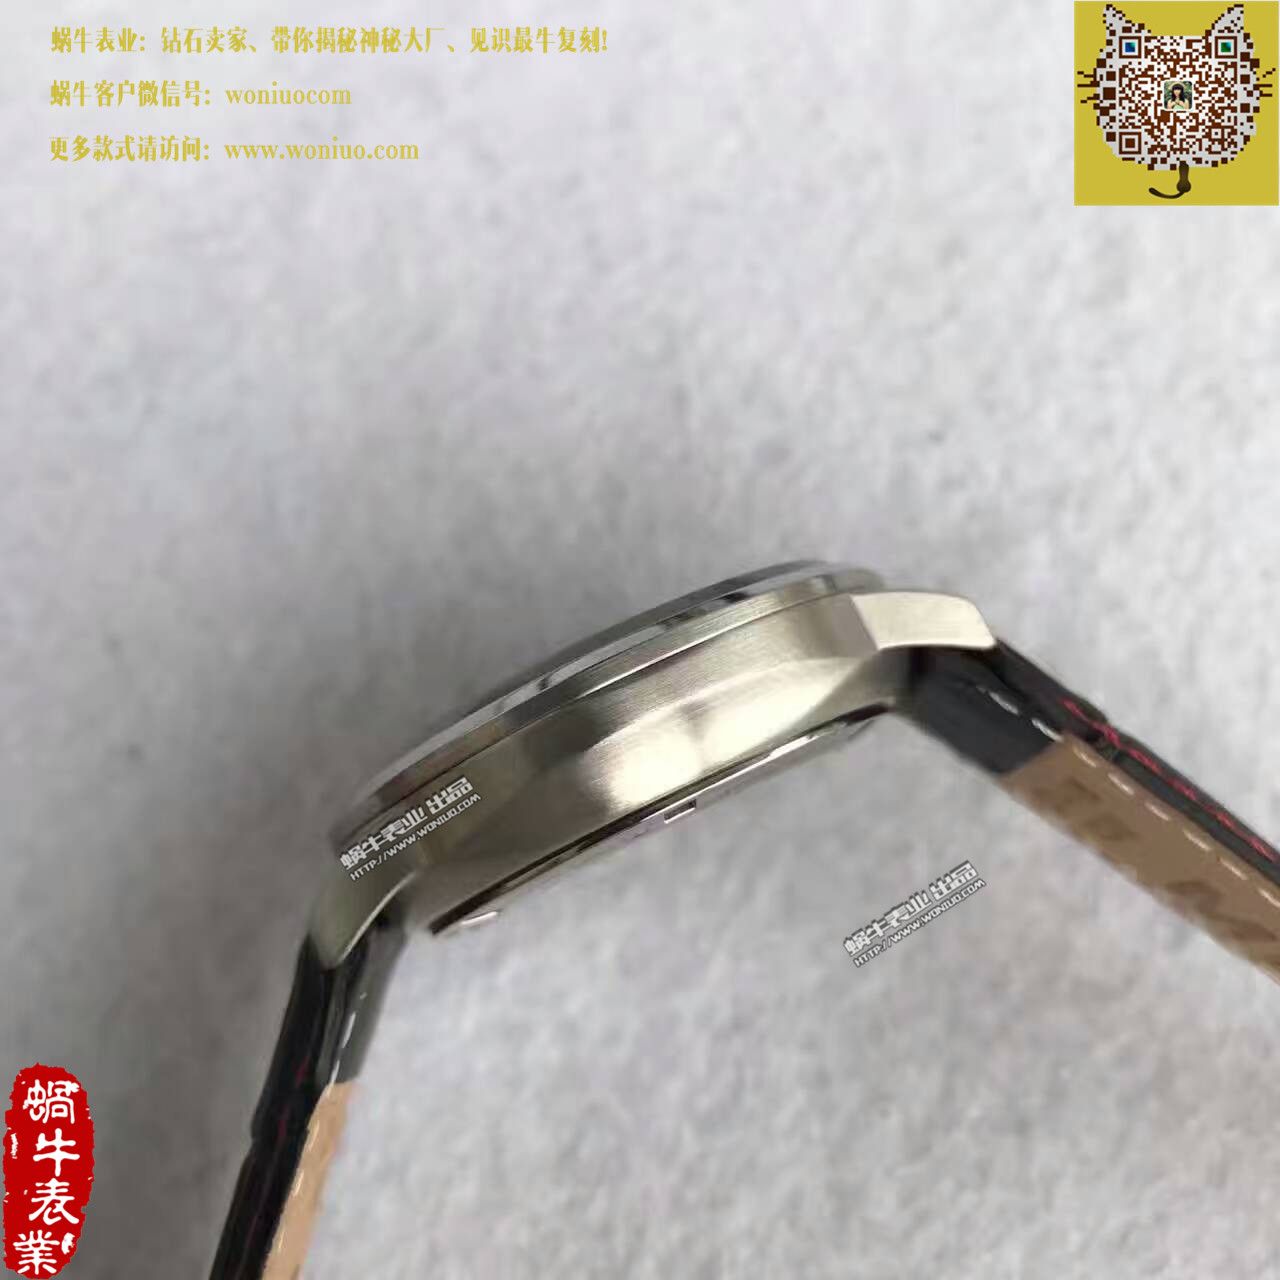 【台湾厂一比一复刻手表】美度指挥官系列M021.431.16.051.00腕表 